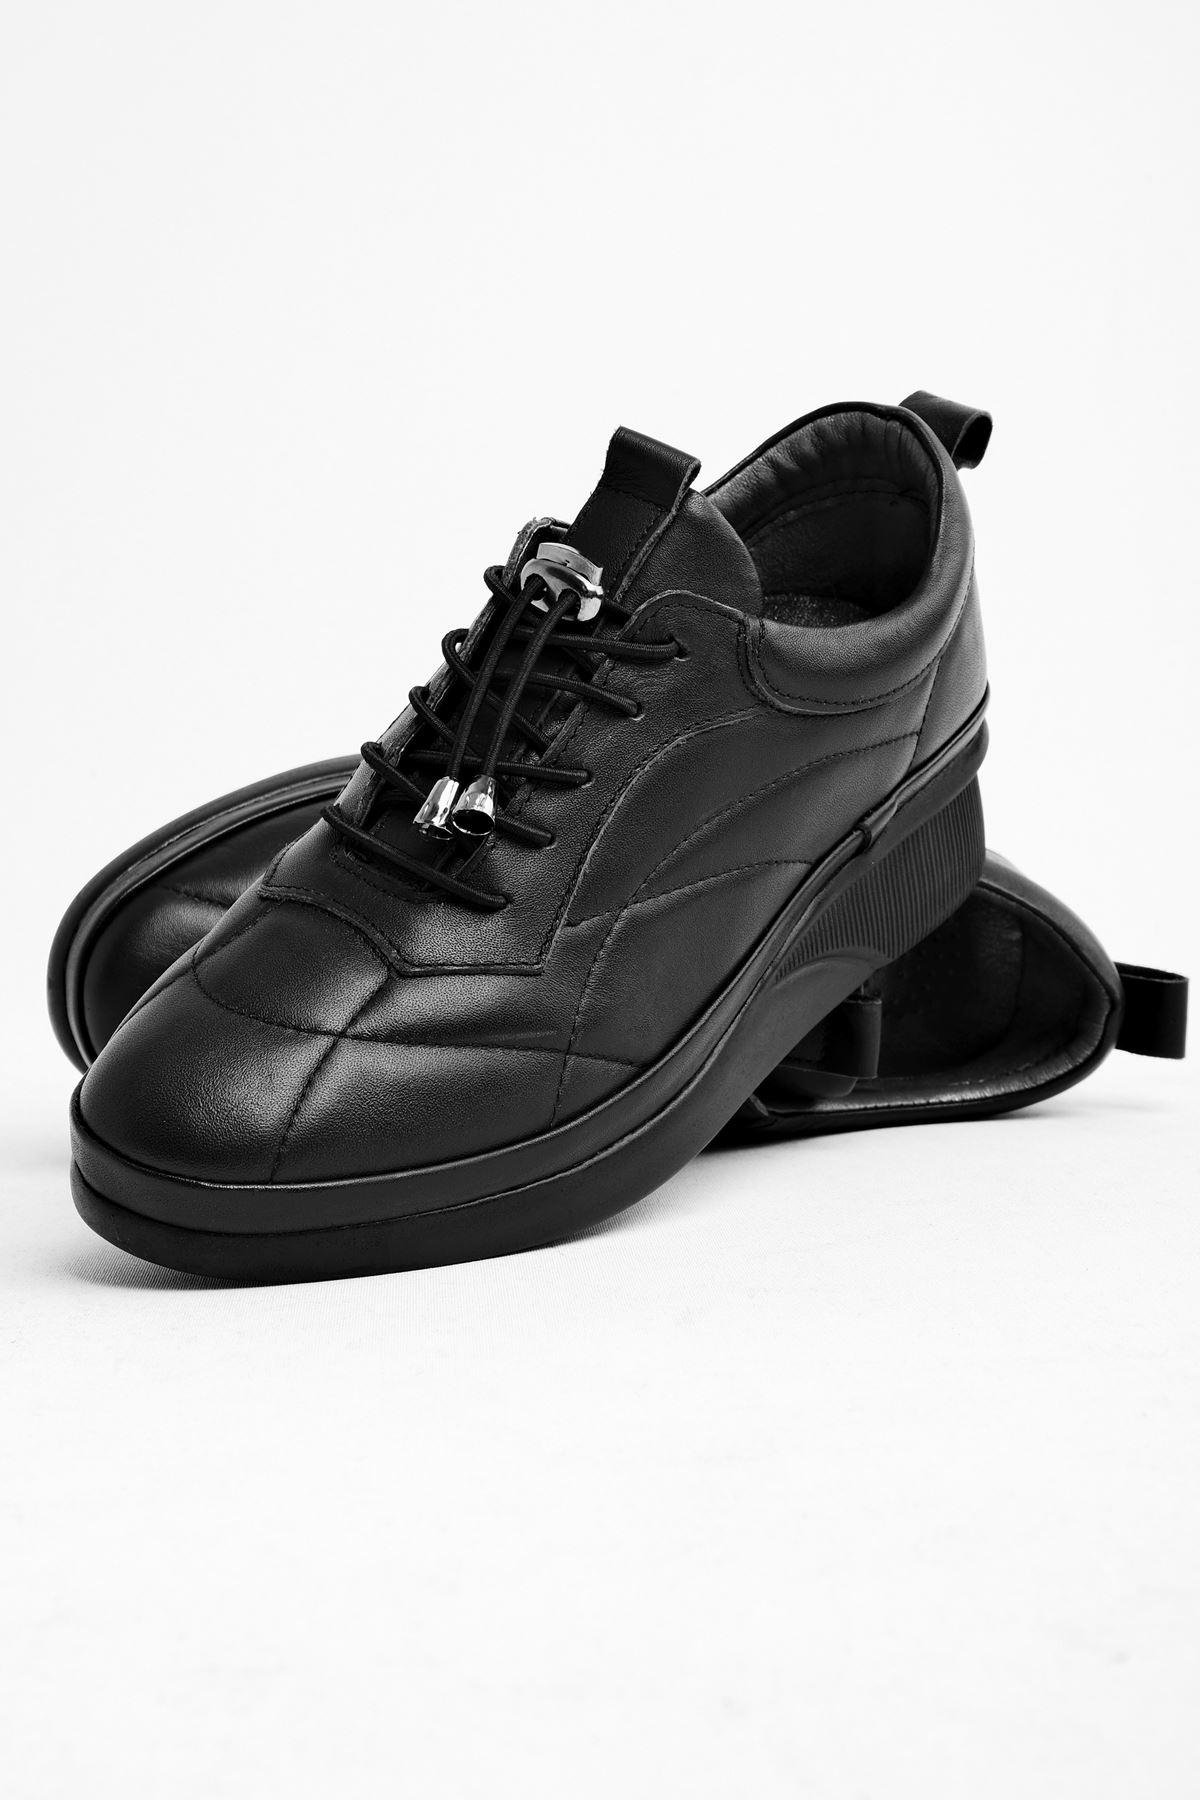 Allan KAdın Hakiki Deri Dikiş Detaylı Detaylı Spor Ayakkabı-siyah